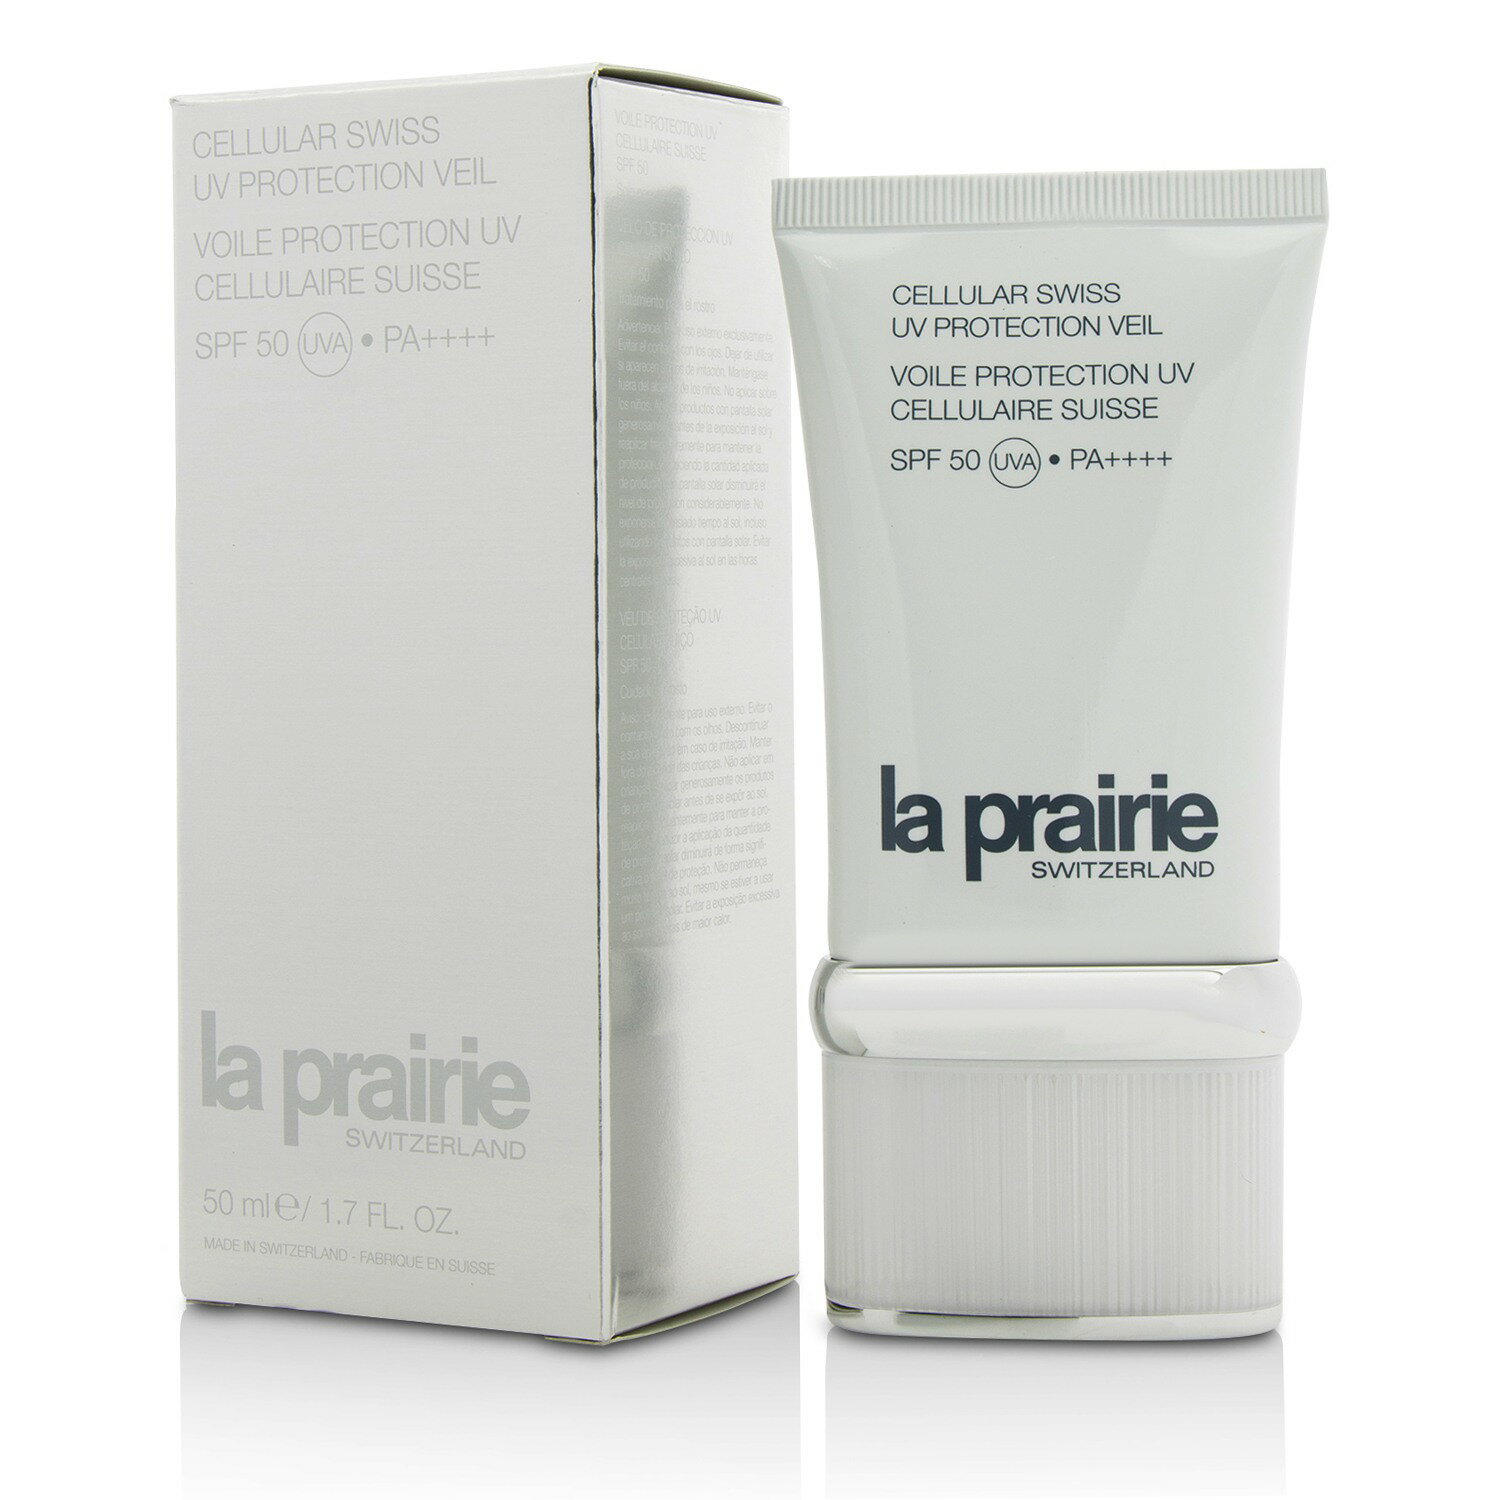 蓓麗 La Prairie - 瑞士全效清透防護乳 每日抗曬防護 SPF50 PA++++